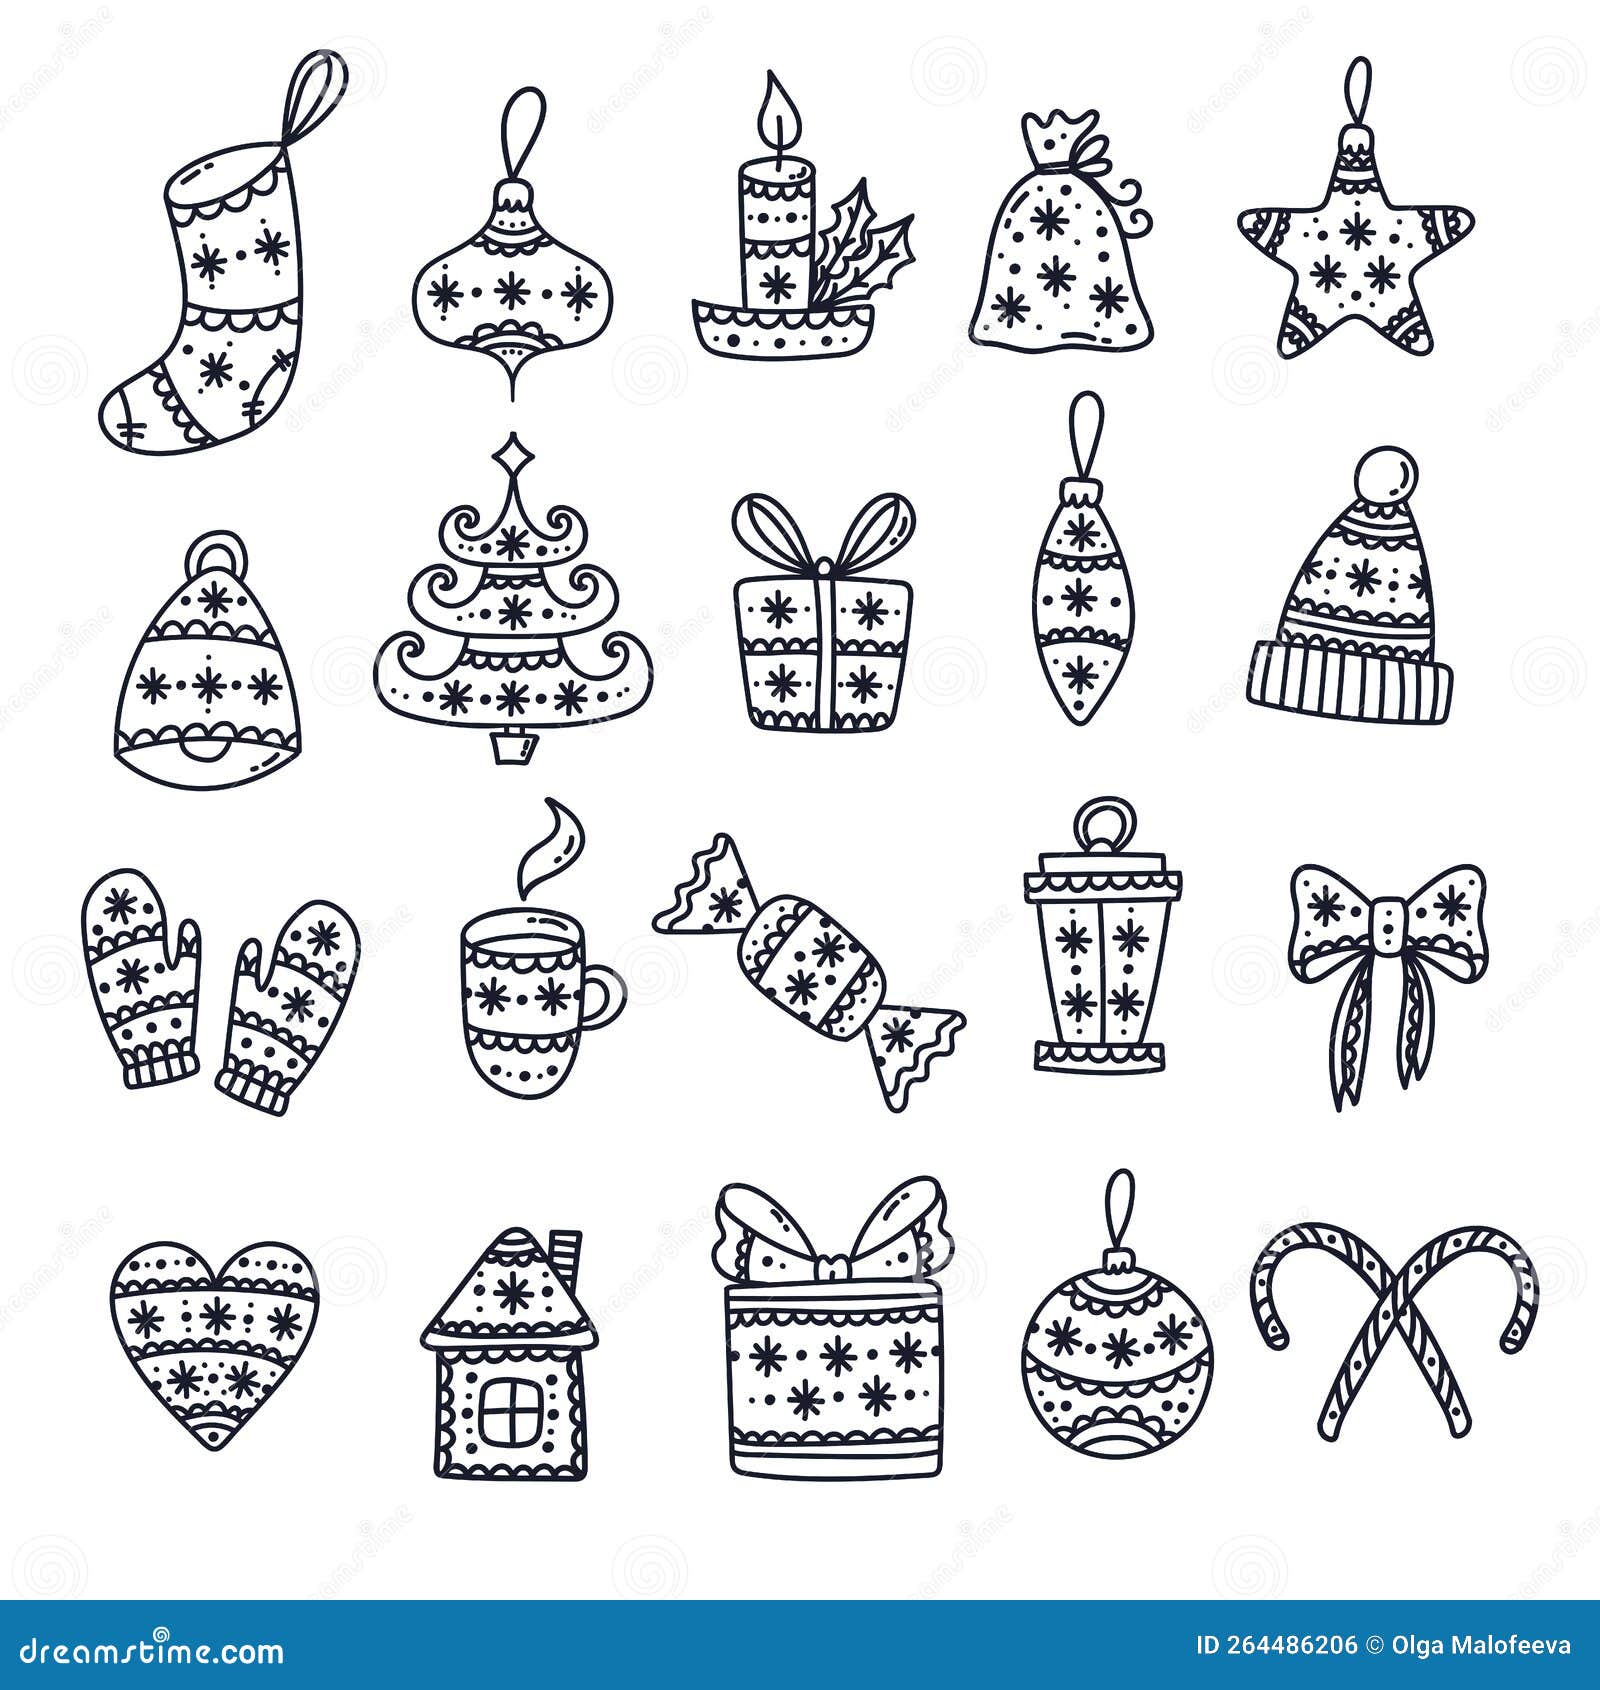 Weihnachten neues Jahr cute doodle Vektor Icons Set. Vektorgrafik